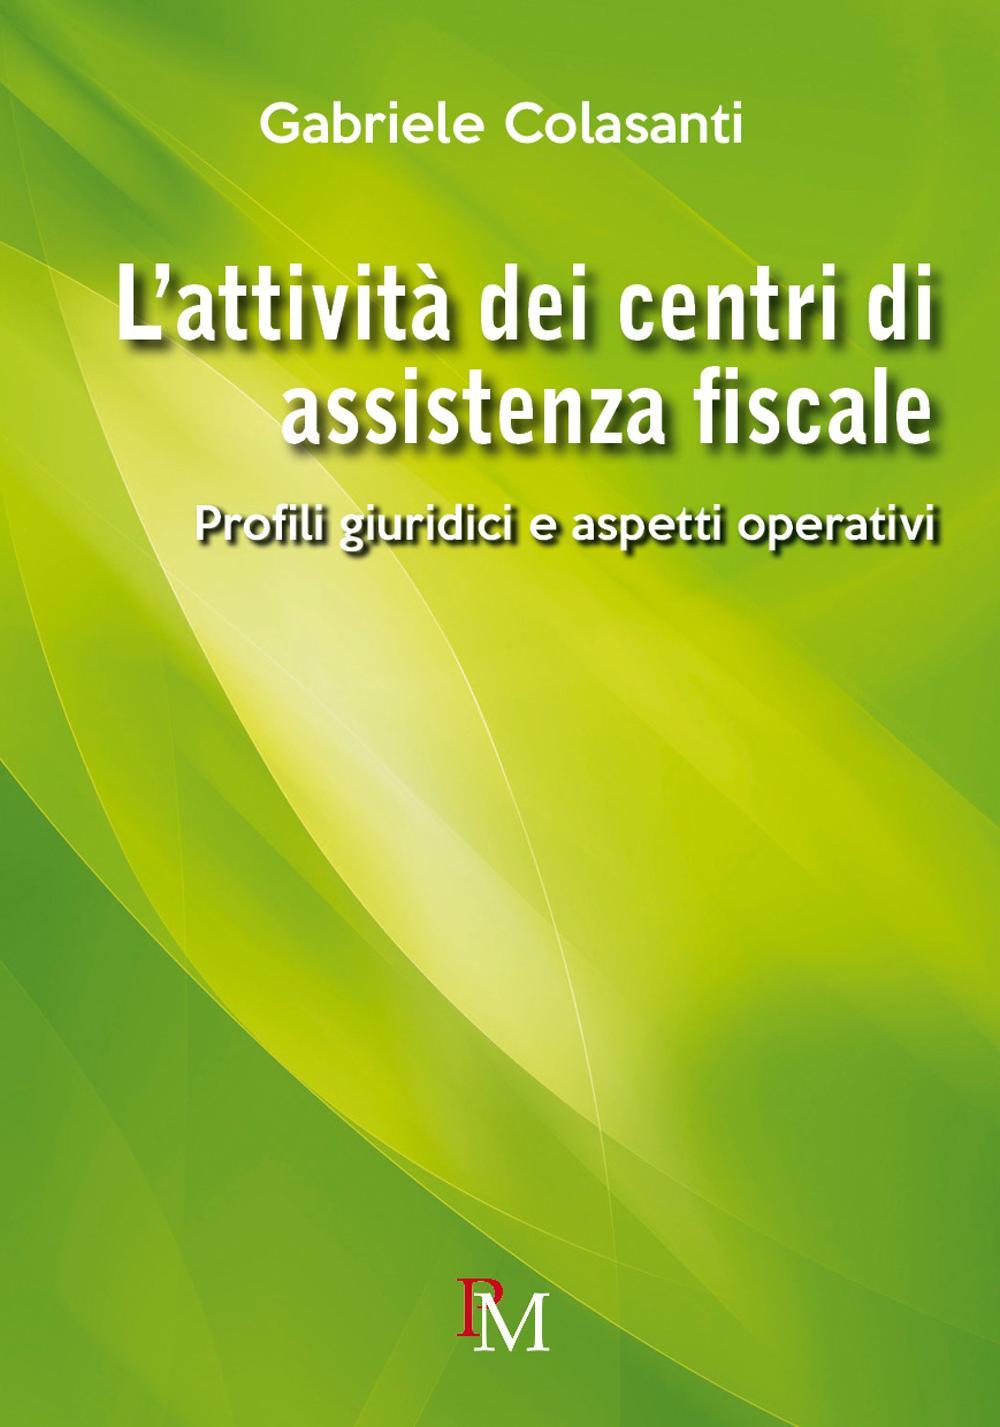 Knjiga attività dei centri di assistenza fiscale. Profili giuridici e aspetti operativi Gabriele Colasanti